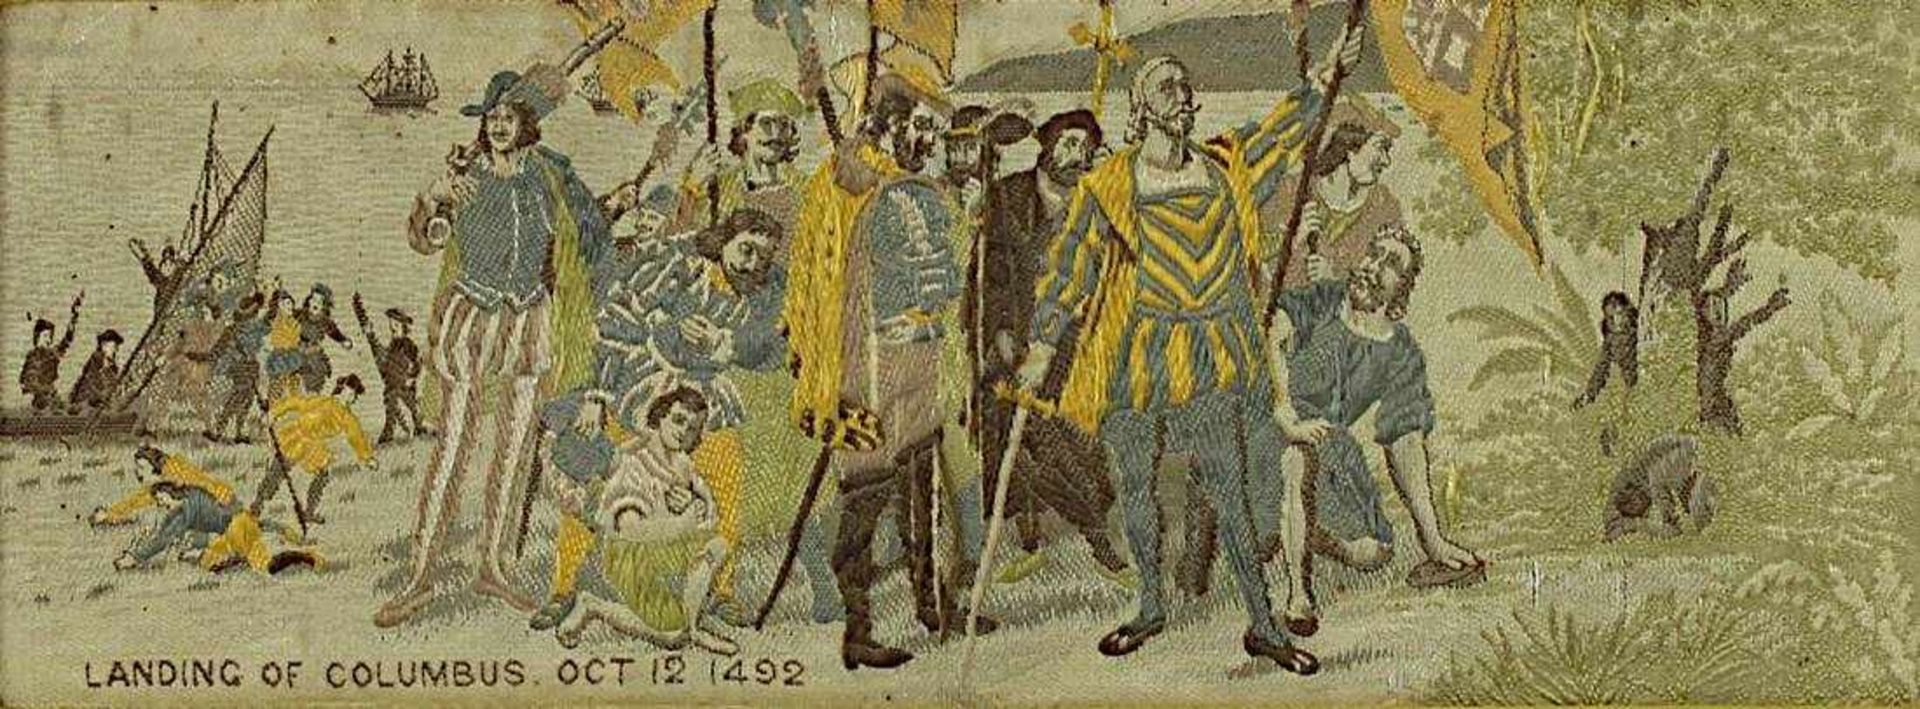 2 Seidenbilder zu Columbus' Enteckung Amerikas, angefertigt zur Weltausstellung Chicago 1893, - Bild 4 aus 5